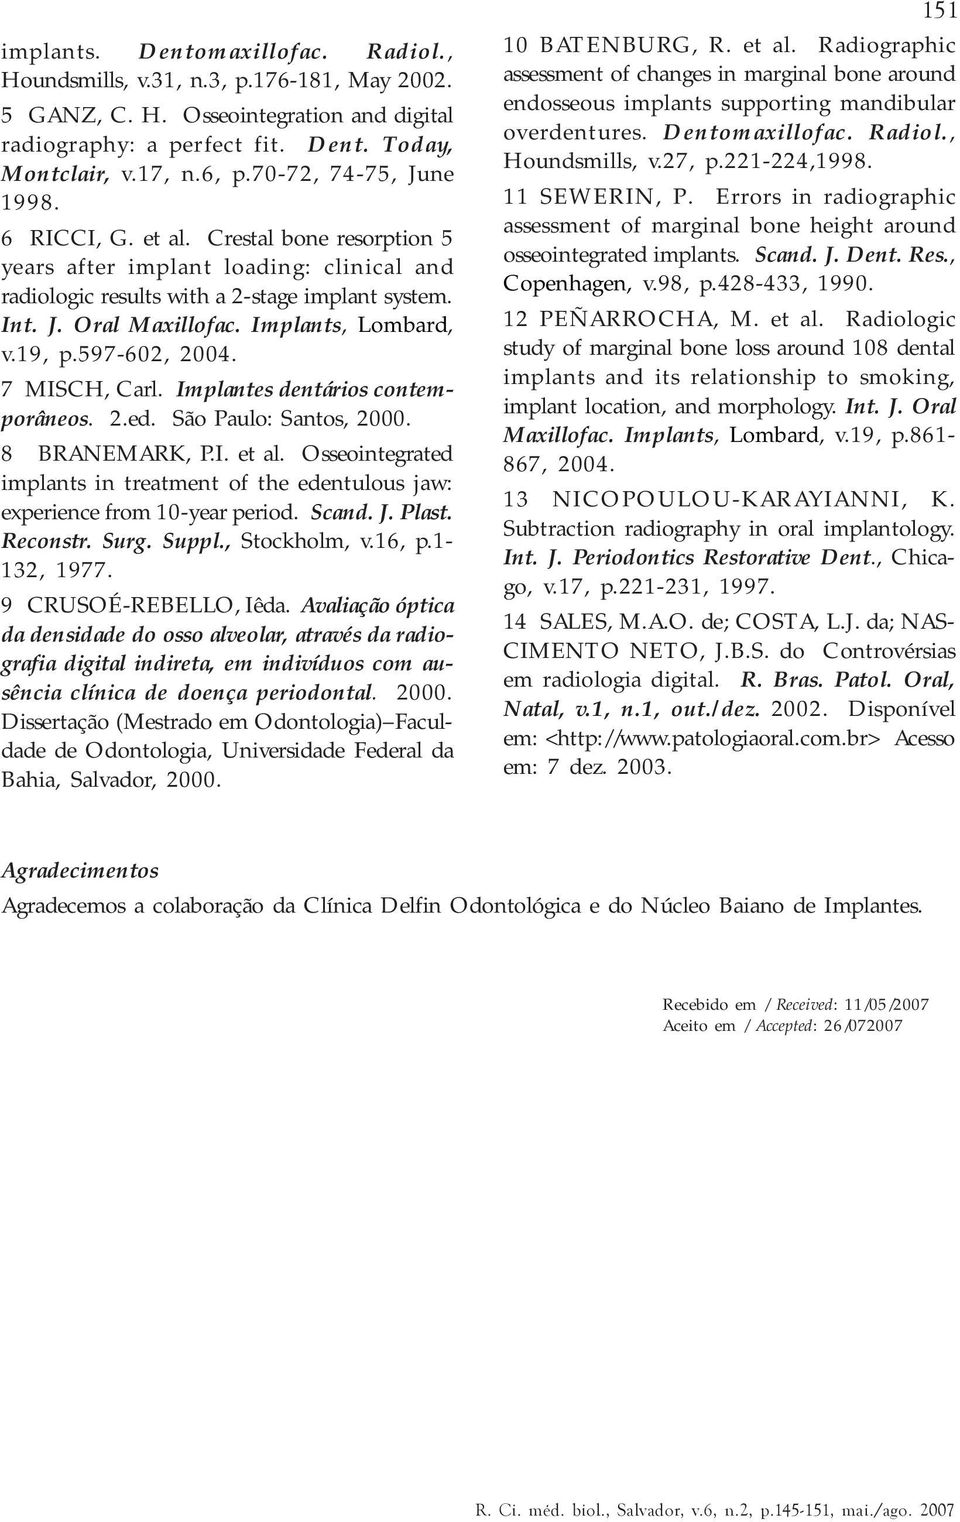 Implants, Lombard, v.19, p.597-602, 2004. 7 MISCH, Carl. Implantes dentários contemporâneos. 2.ed. São Paulo: Santos, 2000. 8 BRANEMARK, P.I. et al.